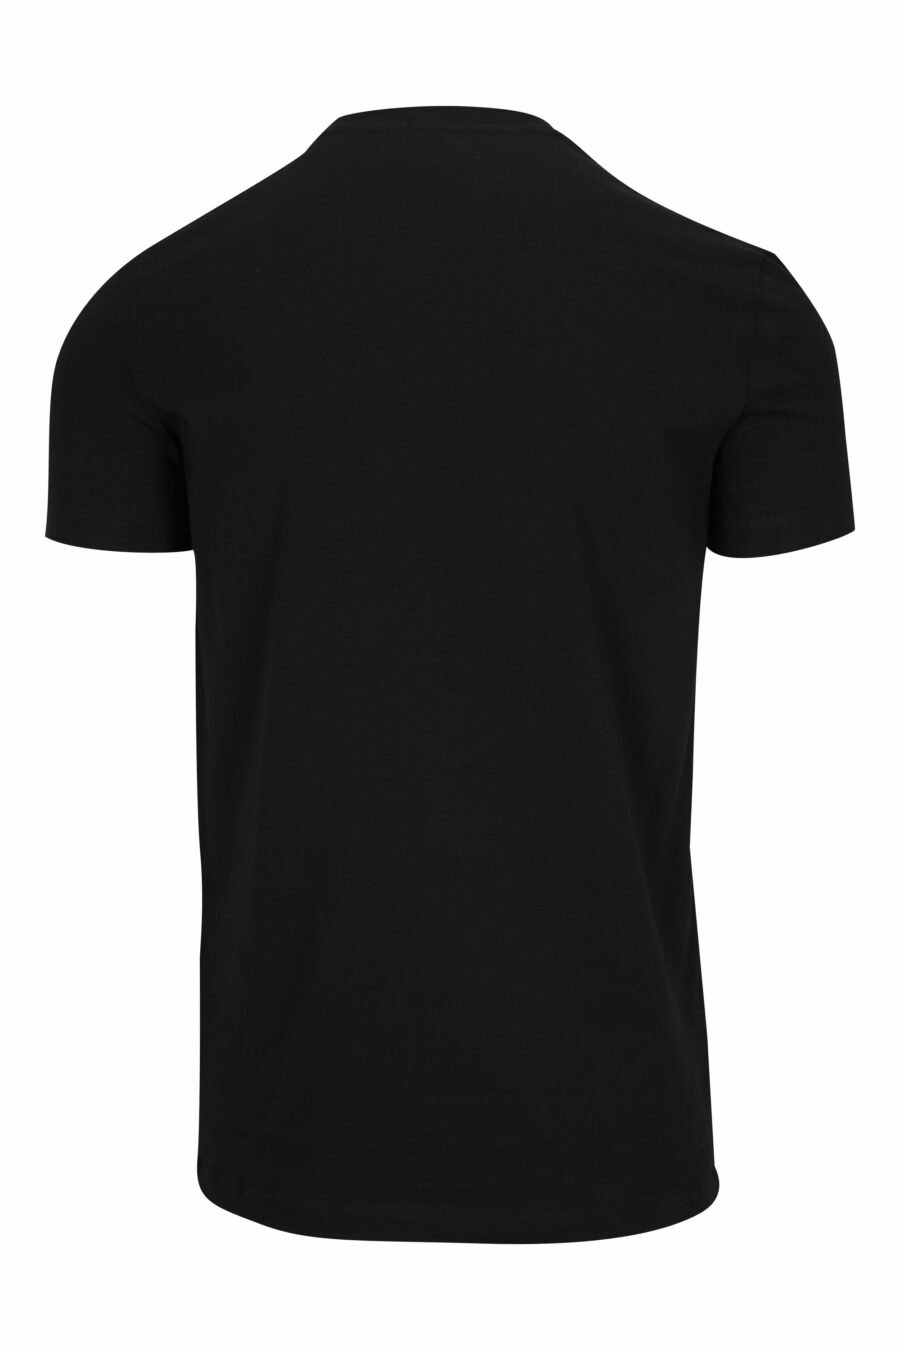 T-shirt preta com roupa interior branca minilogue - 8032674811509 1